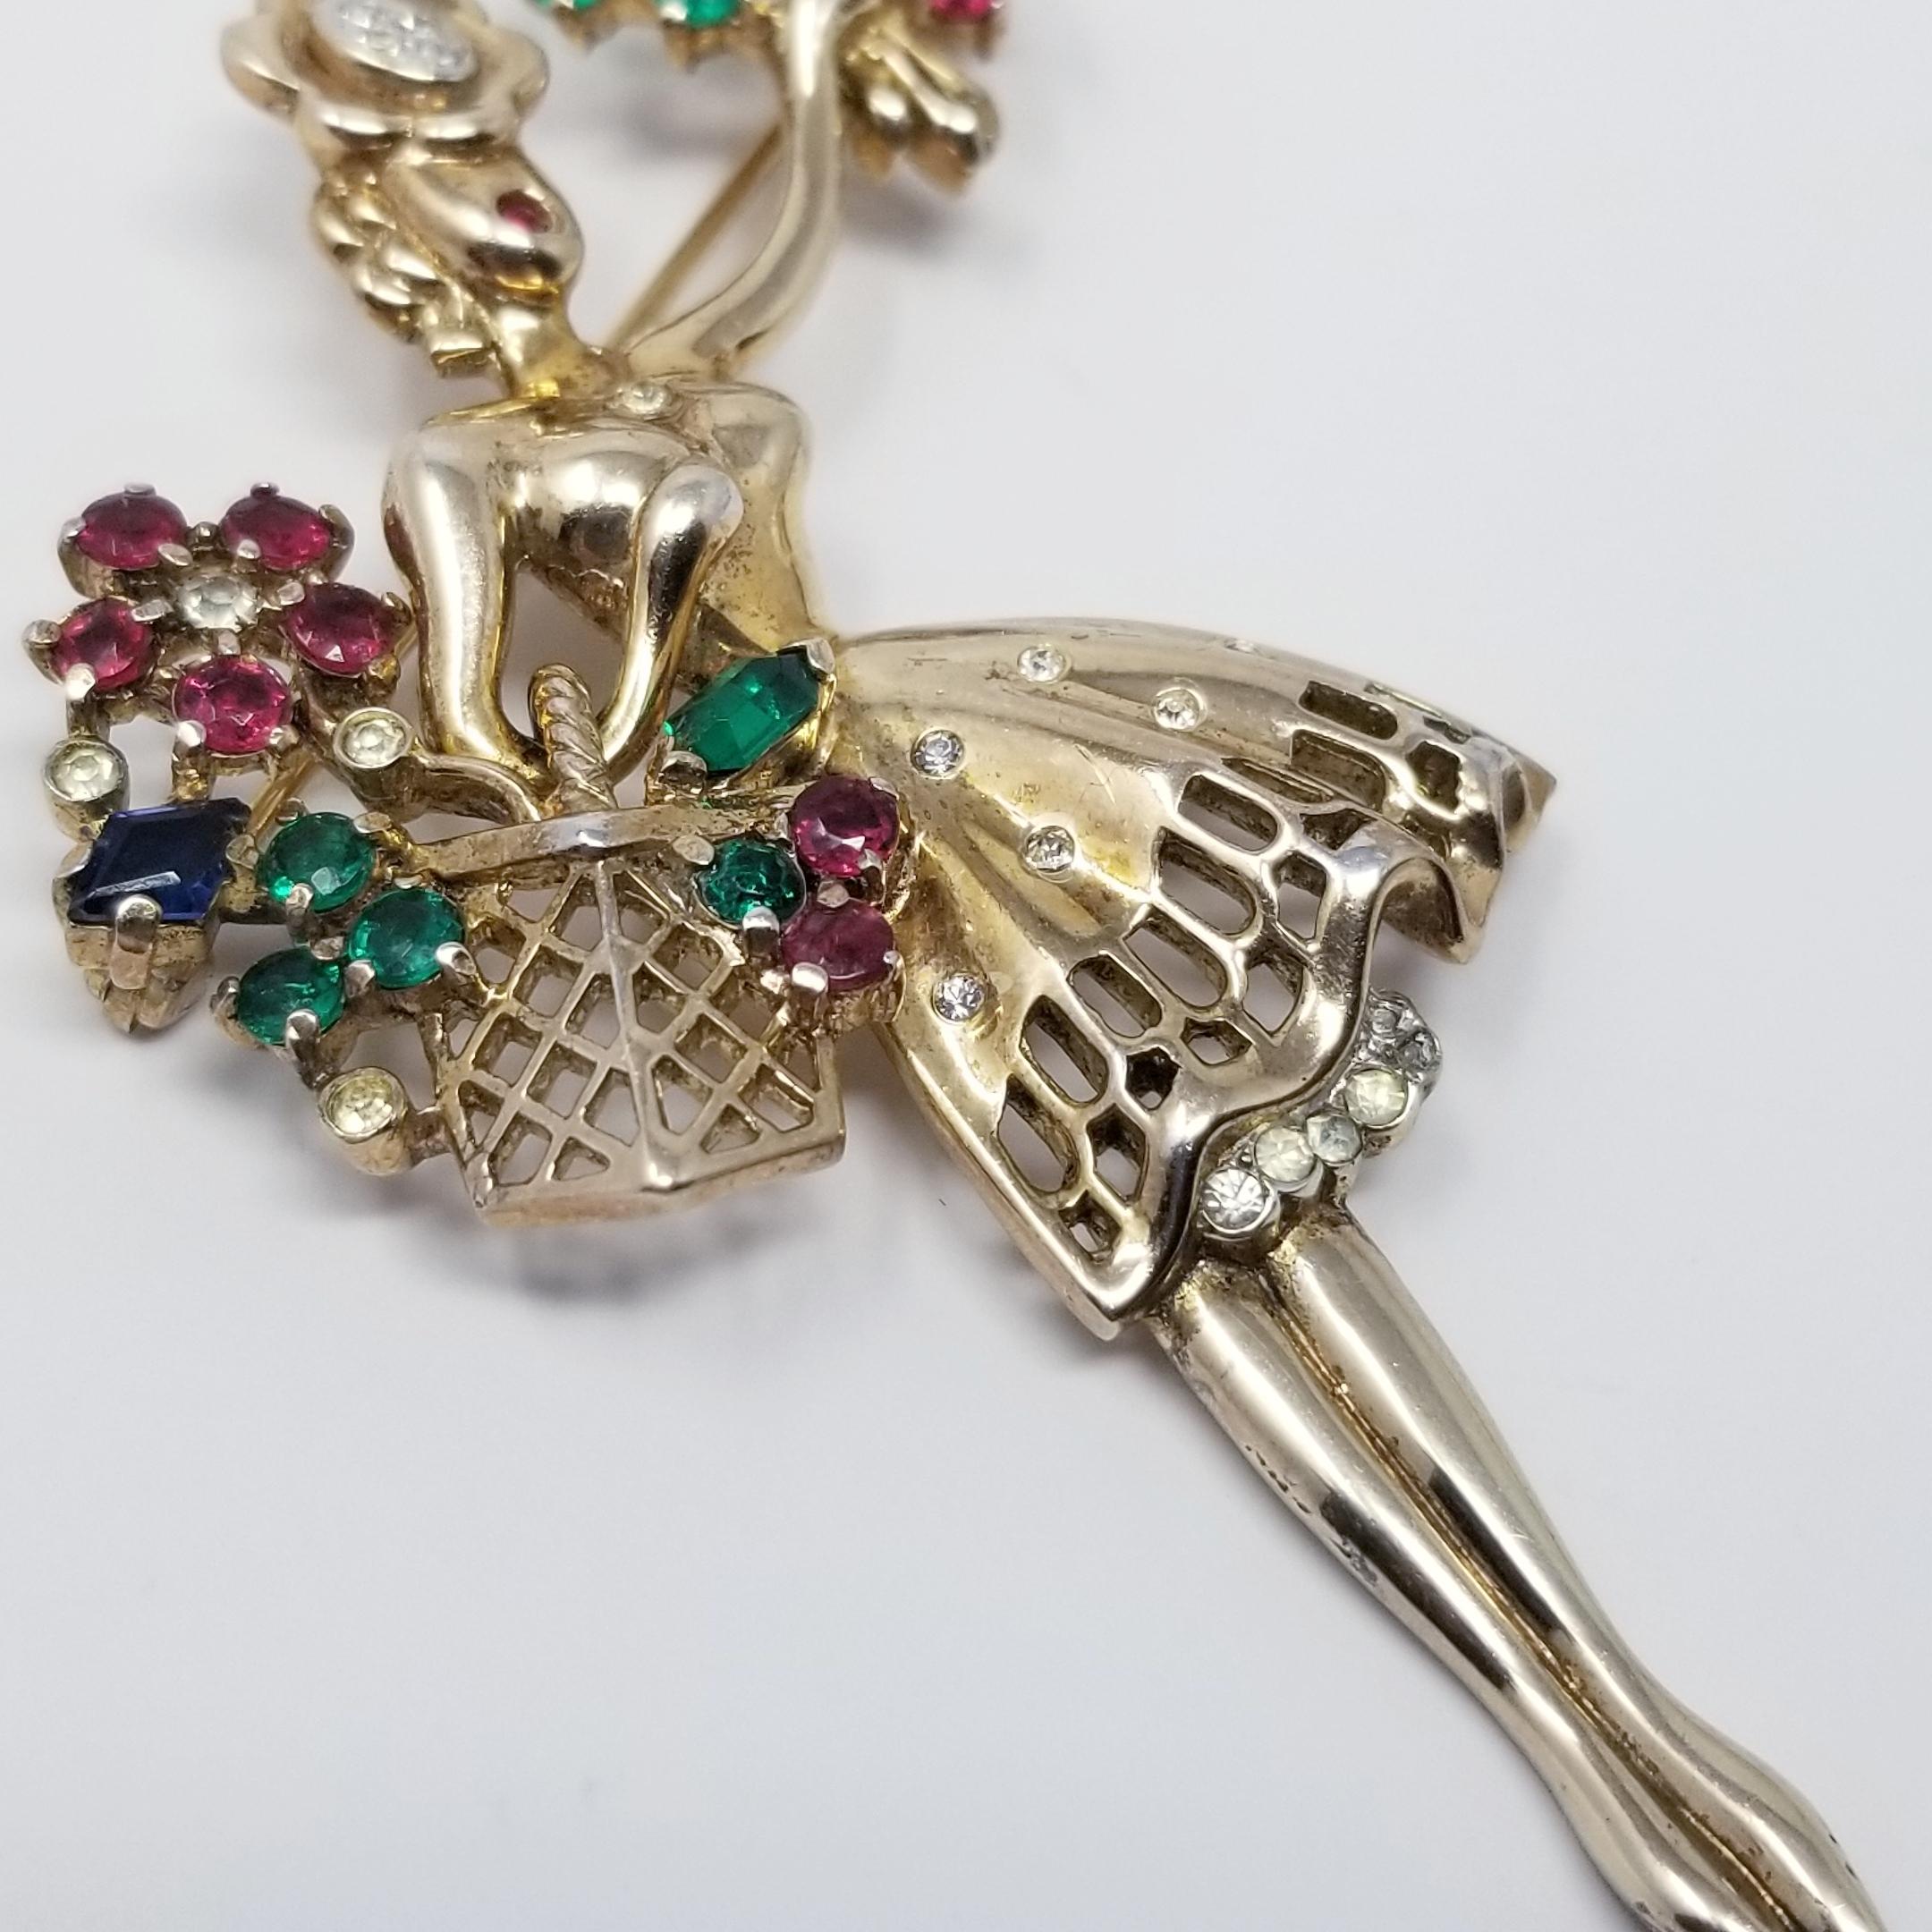 Trifari Crown 1947 Blumenmädchen Sterling Silber Brosche Pin mit Kristallen in Gold (Retro)